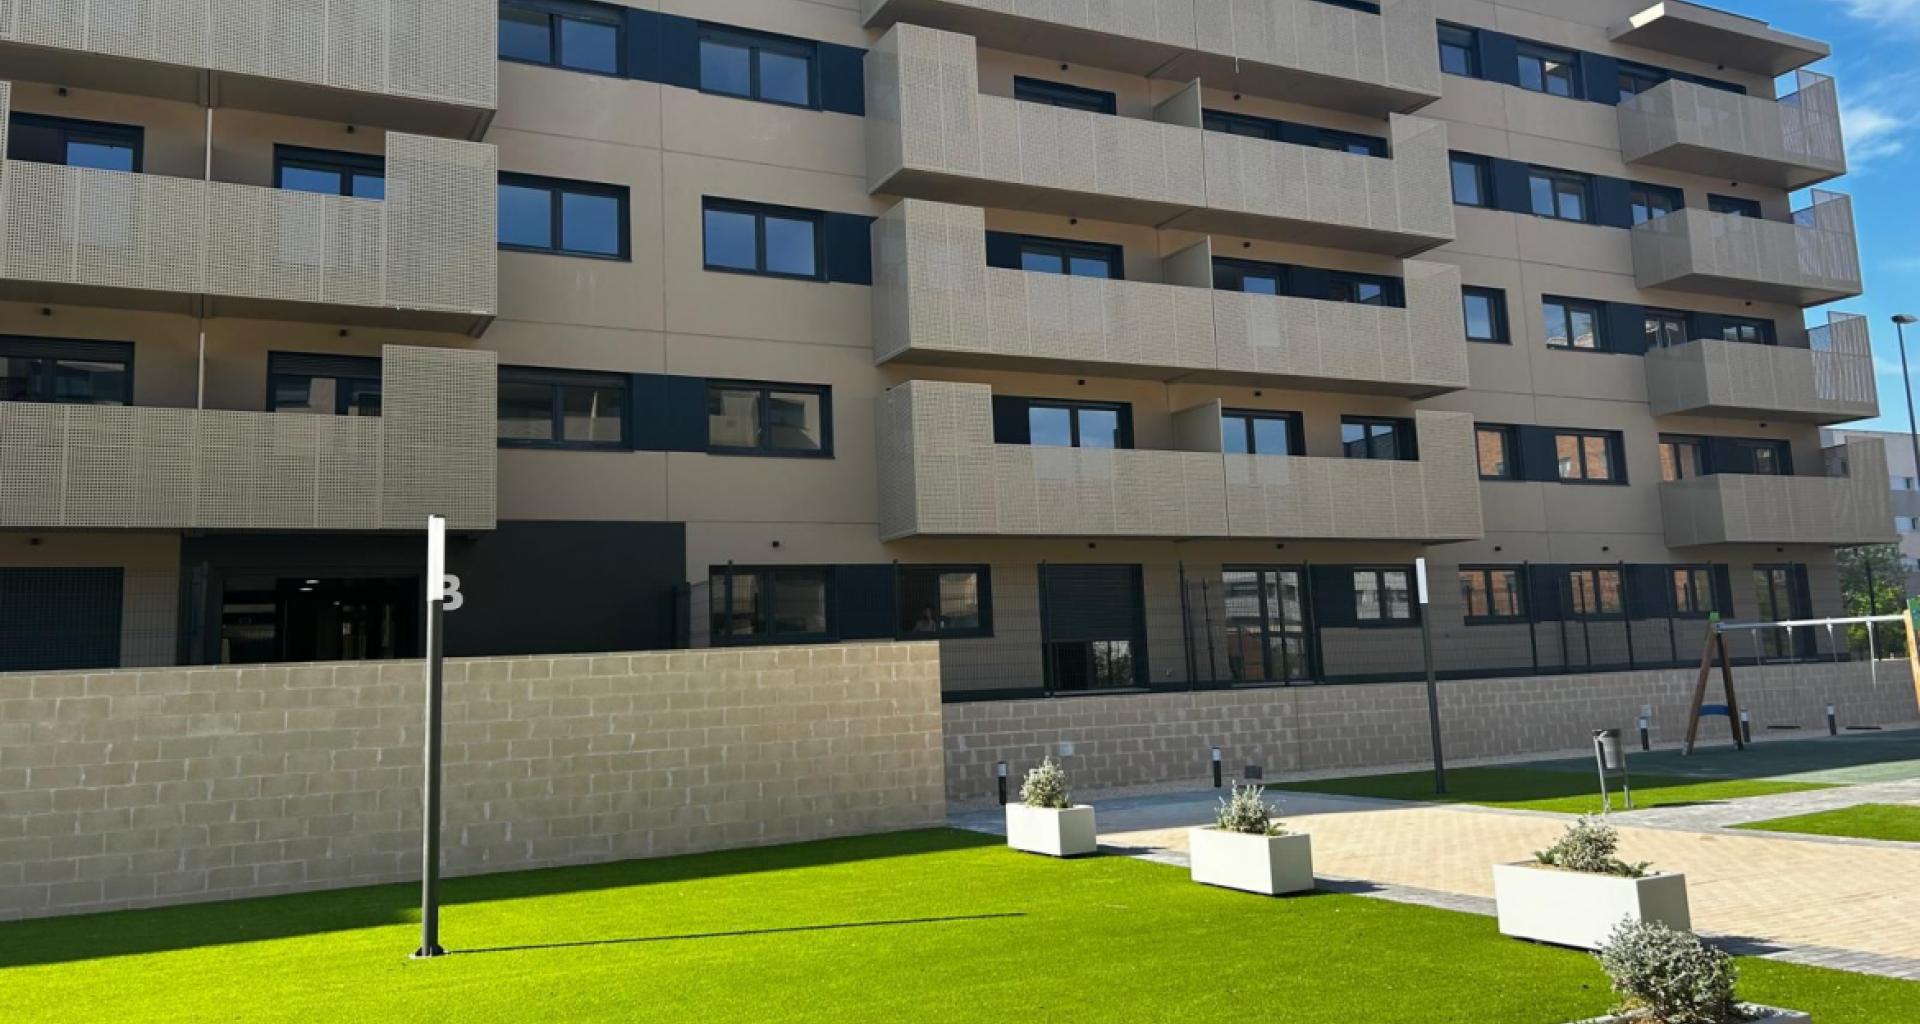 La Comunidad de Madrid entrega en Alcorcón 134 nuevas viviendas del Plan Vive en alquiler a precio asequible